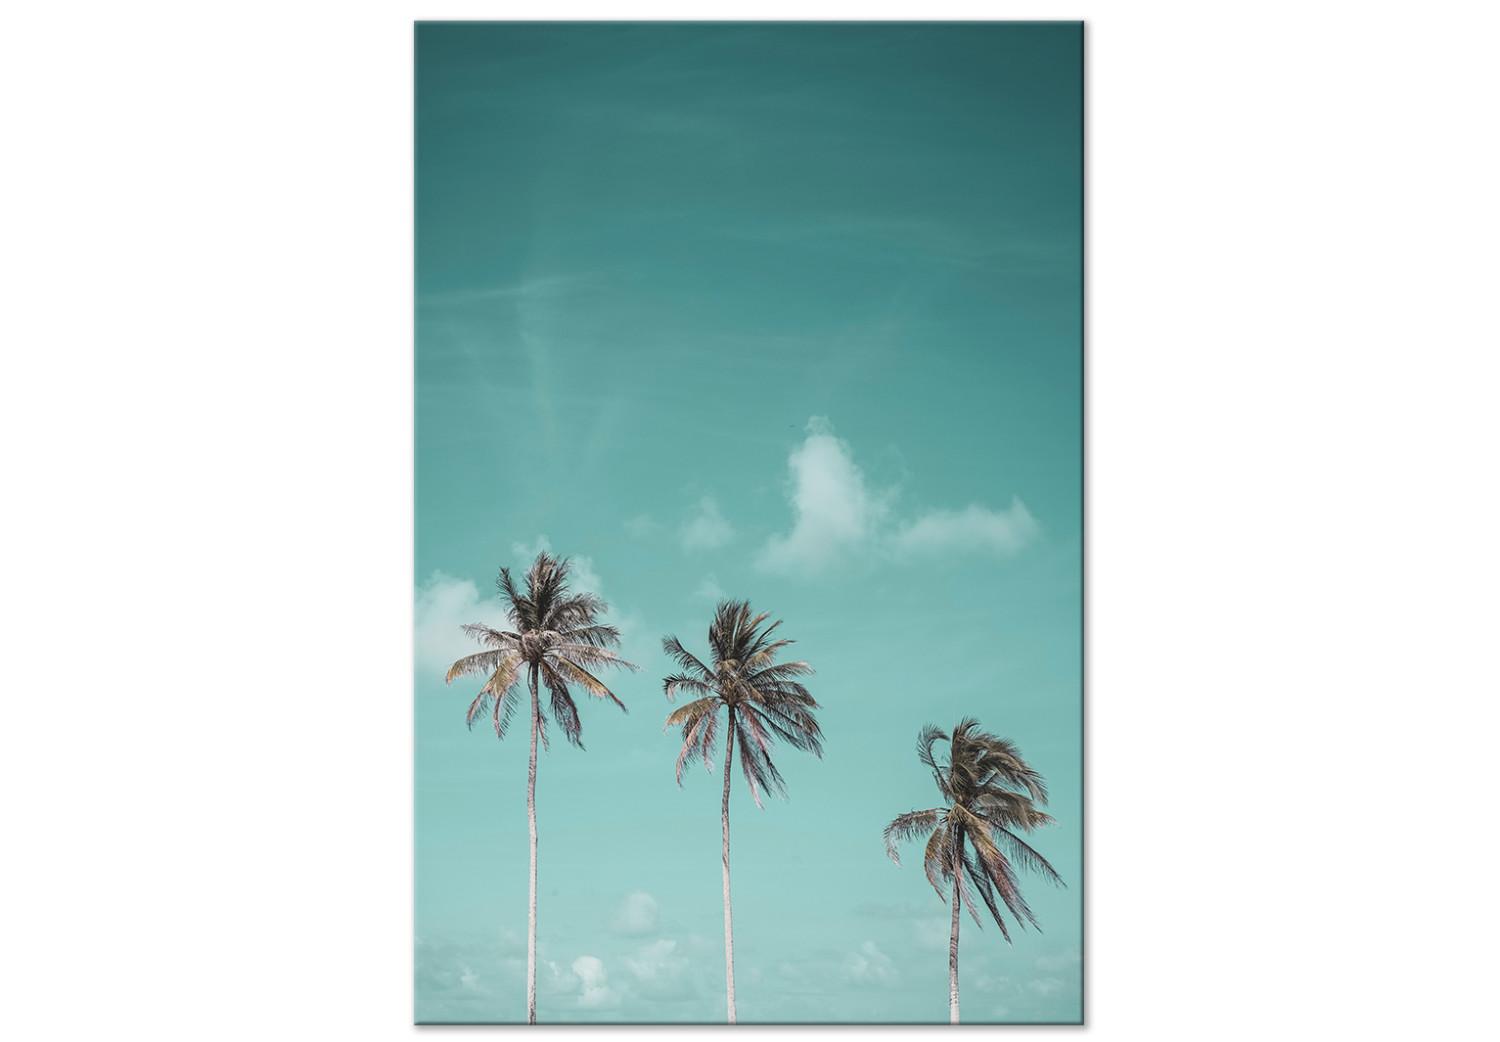 Cuadro decorativo Tres palmeras - imagen de tres árboles contra el cielo azul